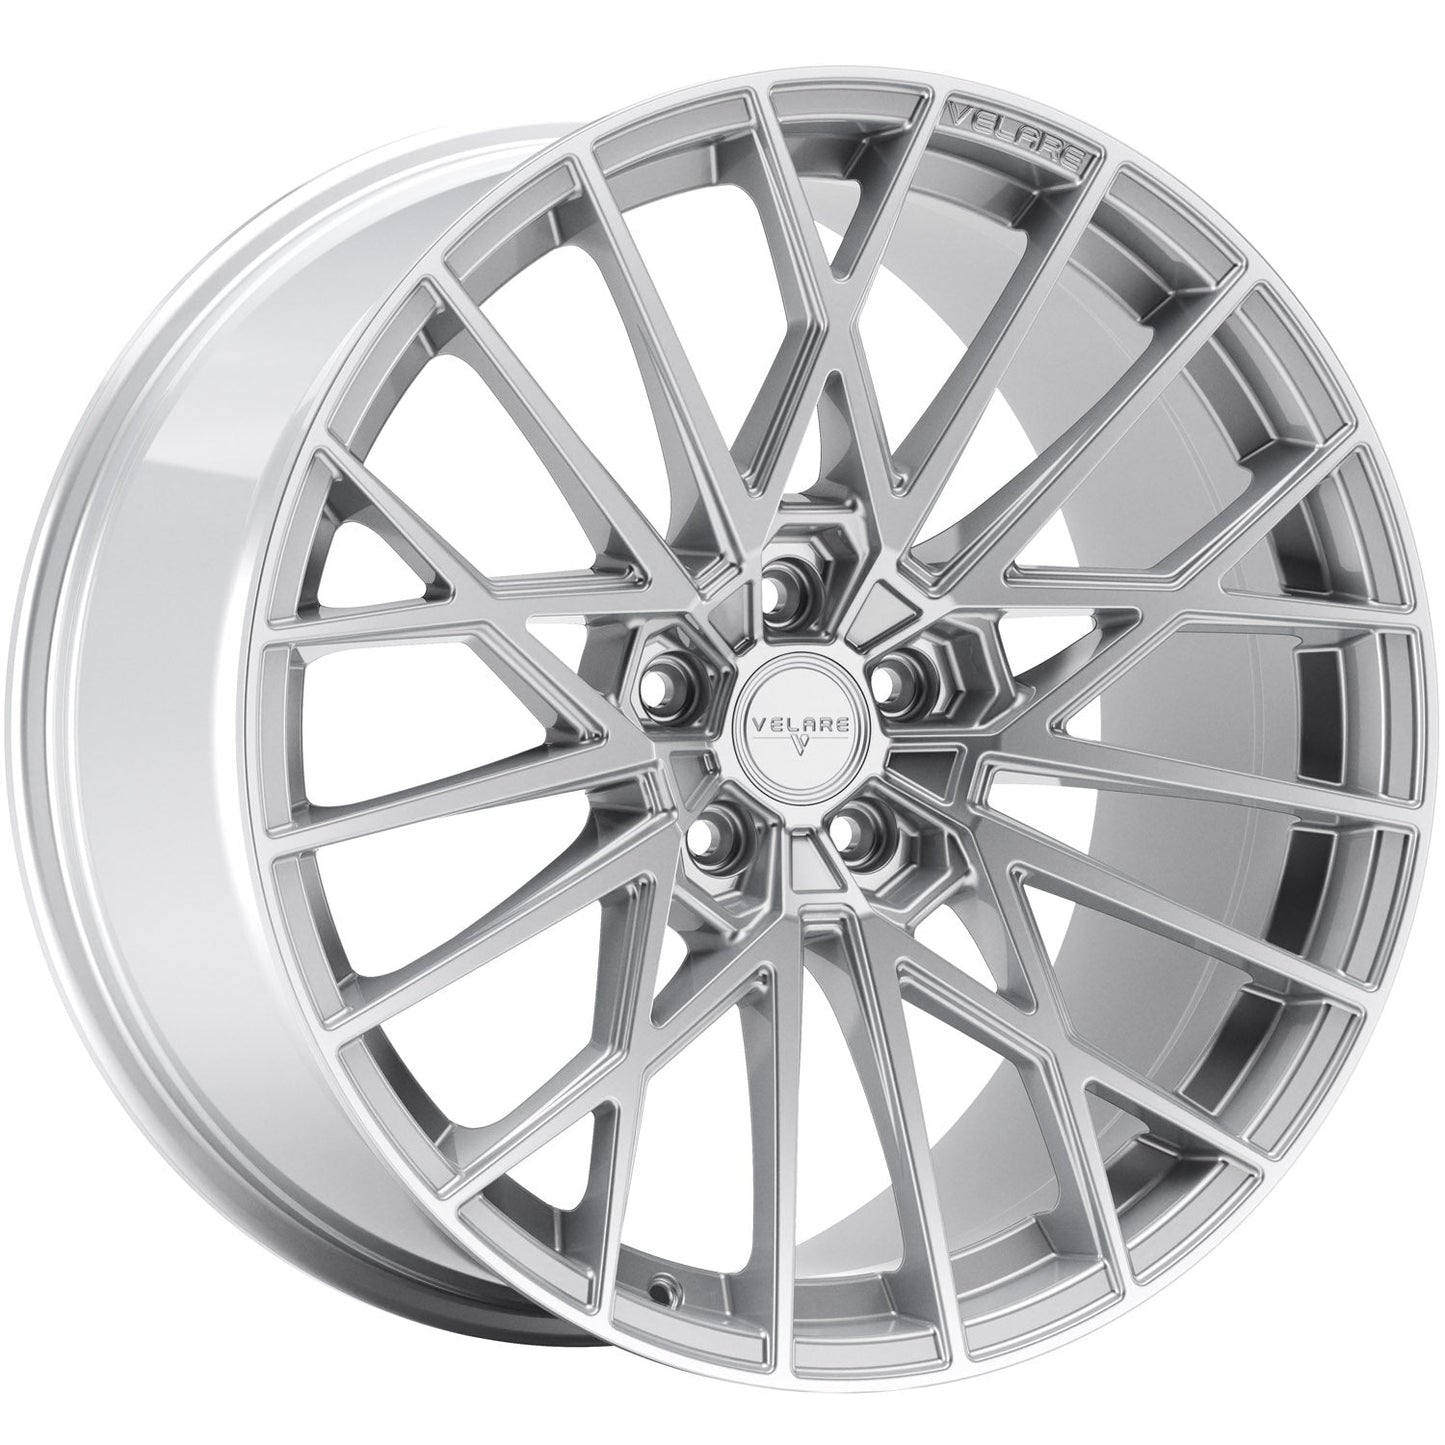 Velare-VLR07-Iridium-Silver-Silver-20x10-72.6-wheels-rims-felger-Felghuset